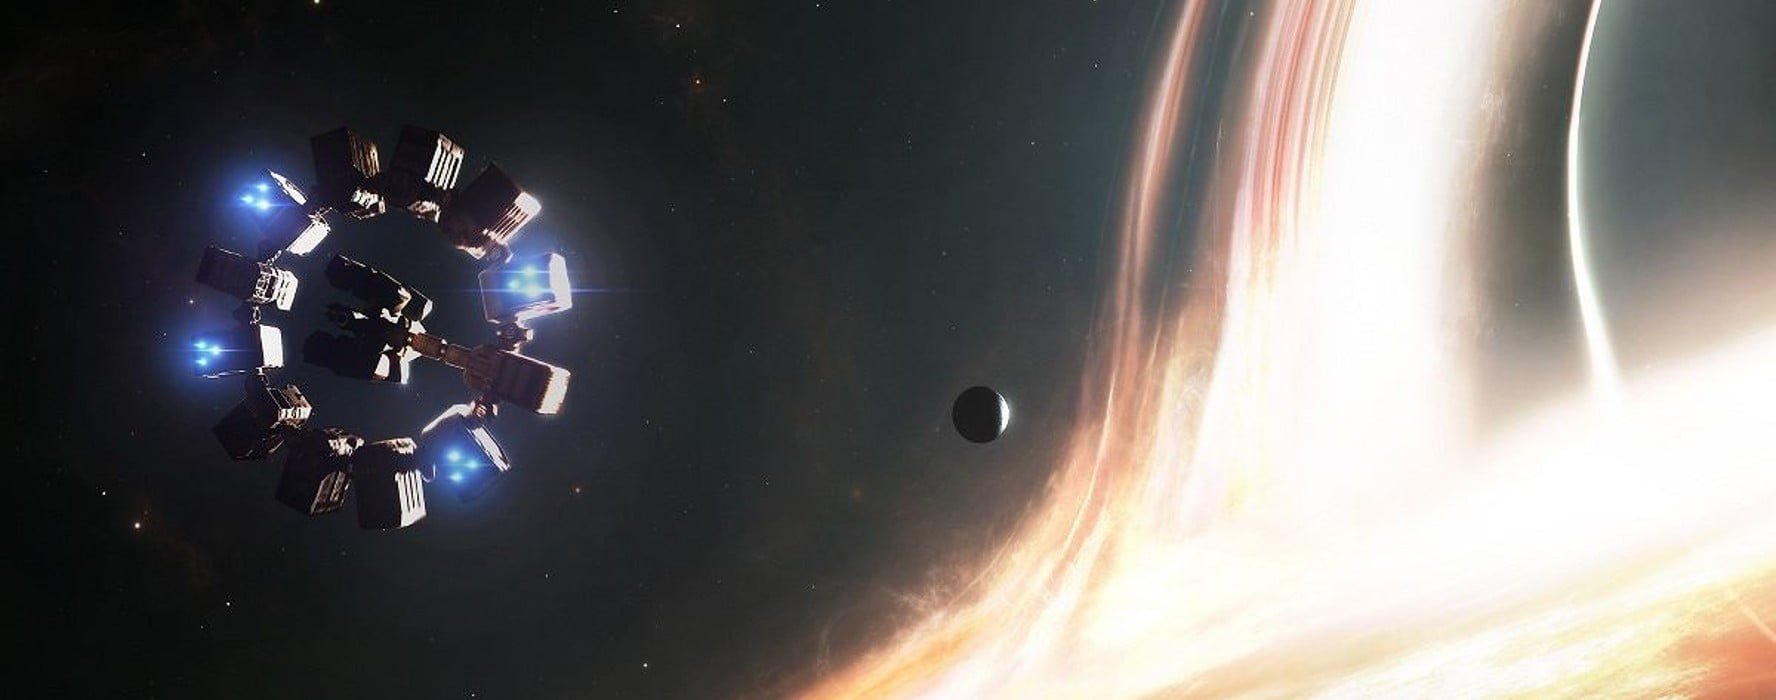 najlepsze filmy science fiction Interstellar